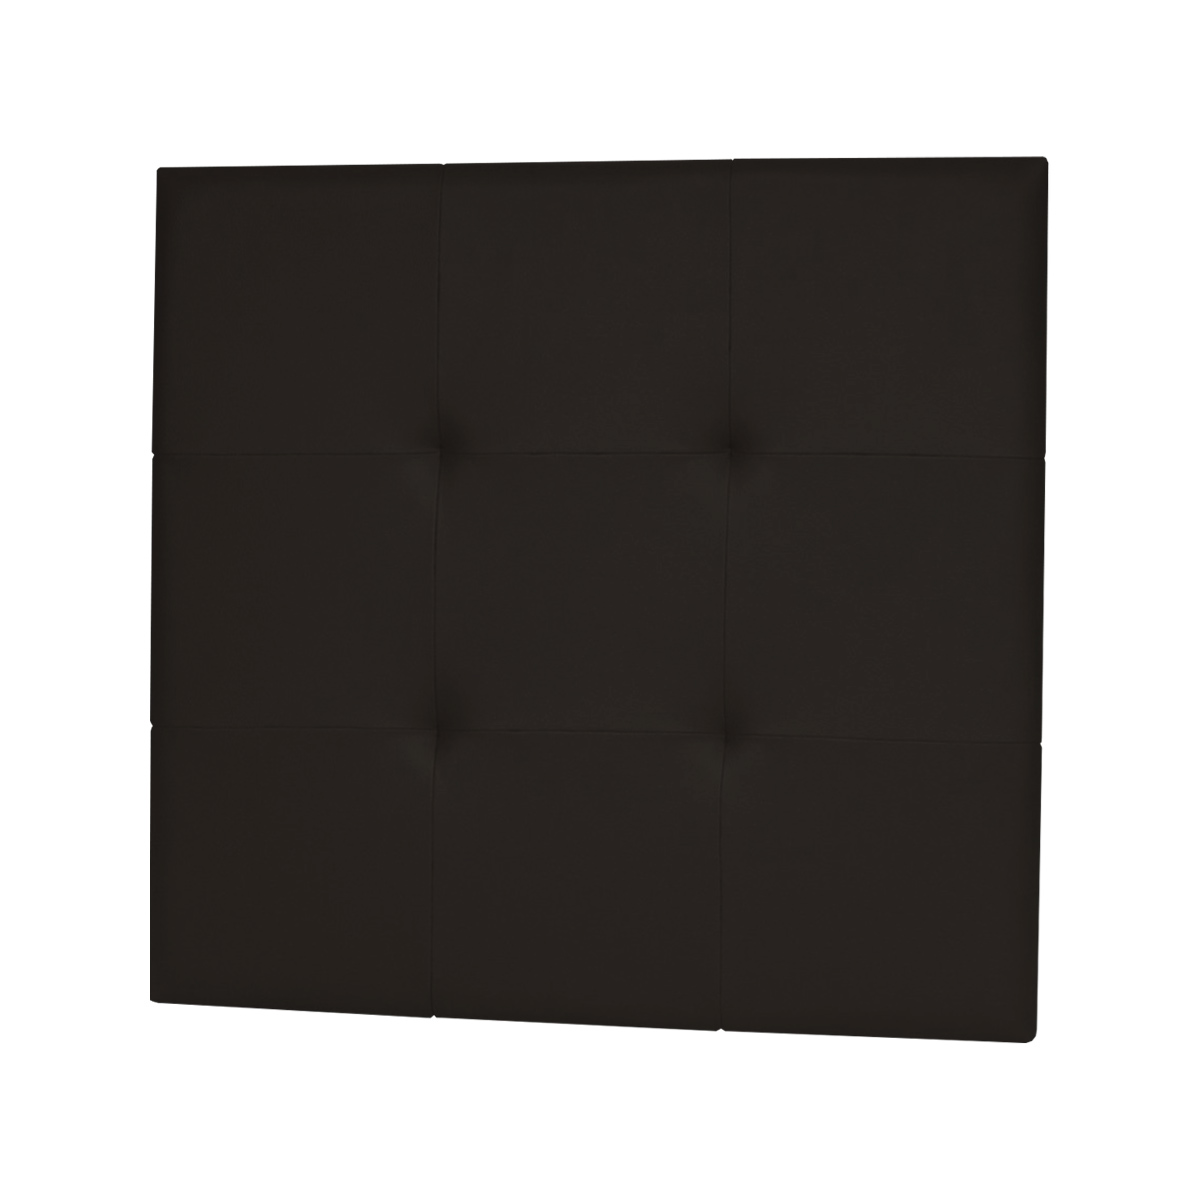 Cabecero capitone 110x110 tapizado polipiel Negro